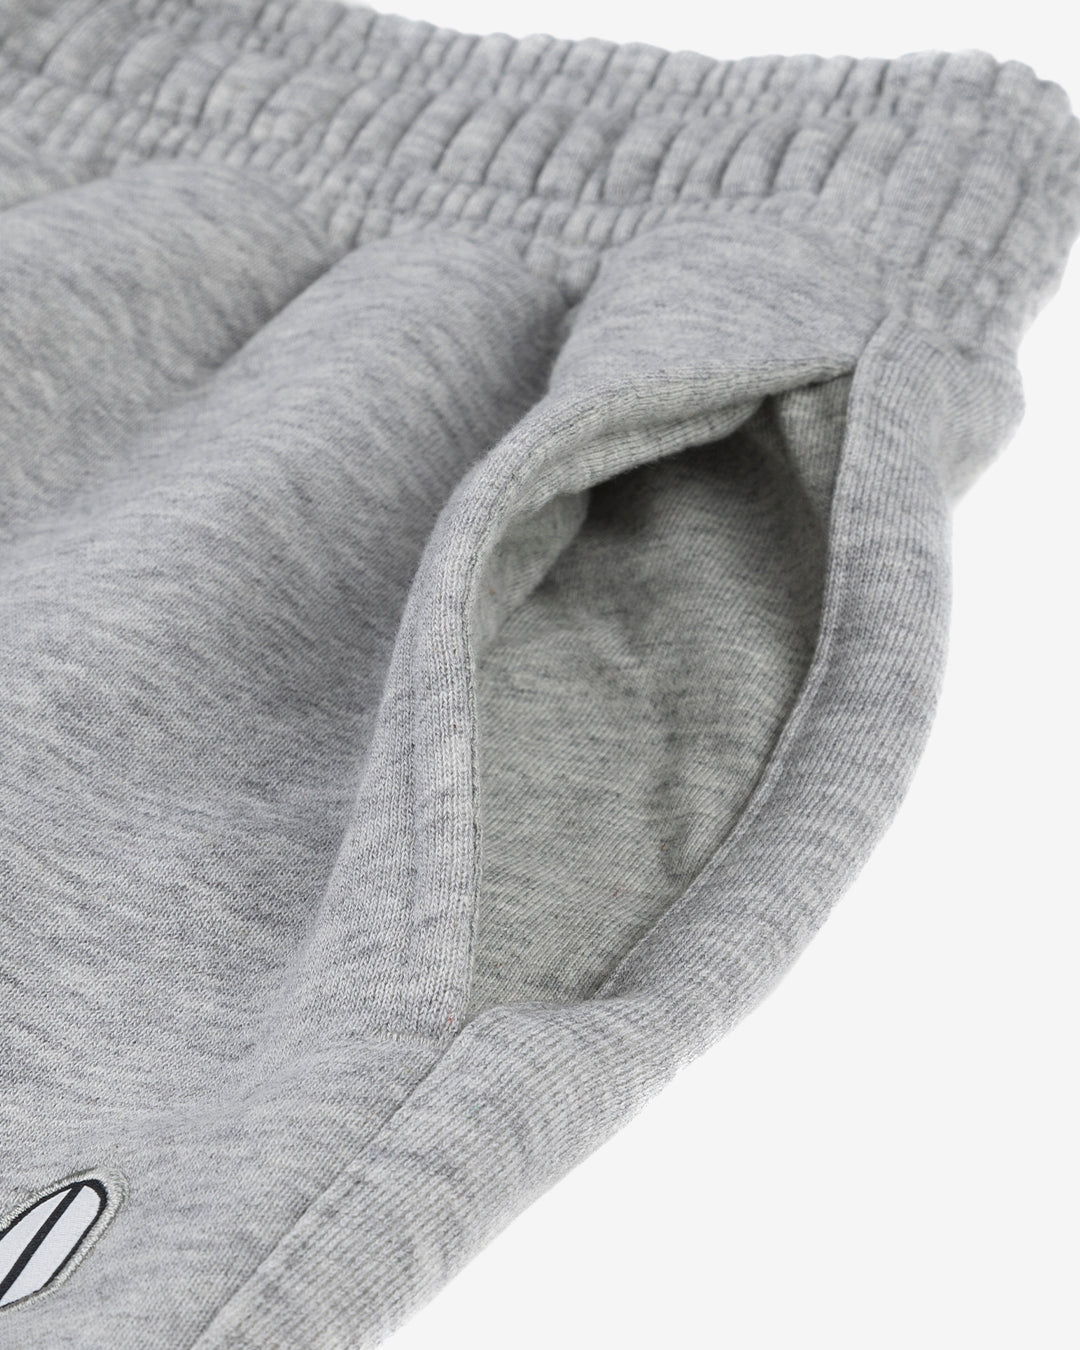 PFC: 002-4 - Men's Sweatpants - Grey Marl